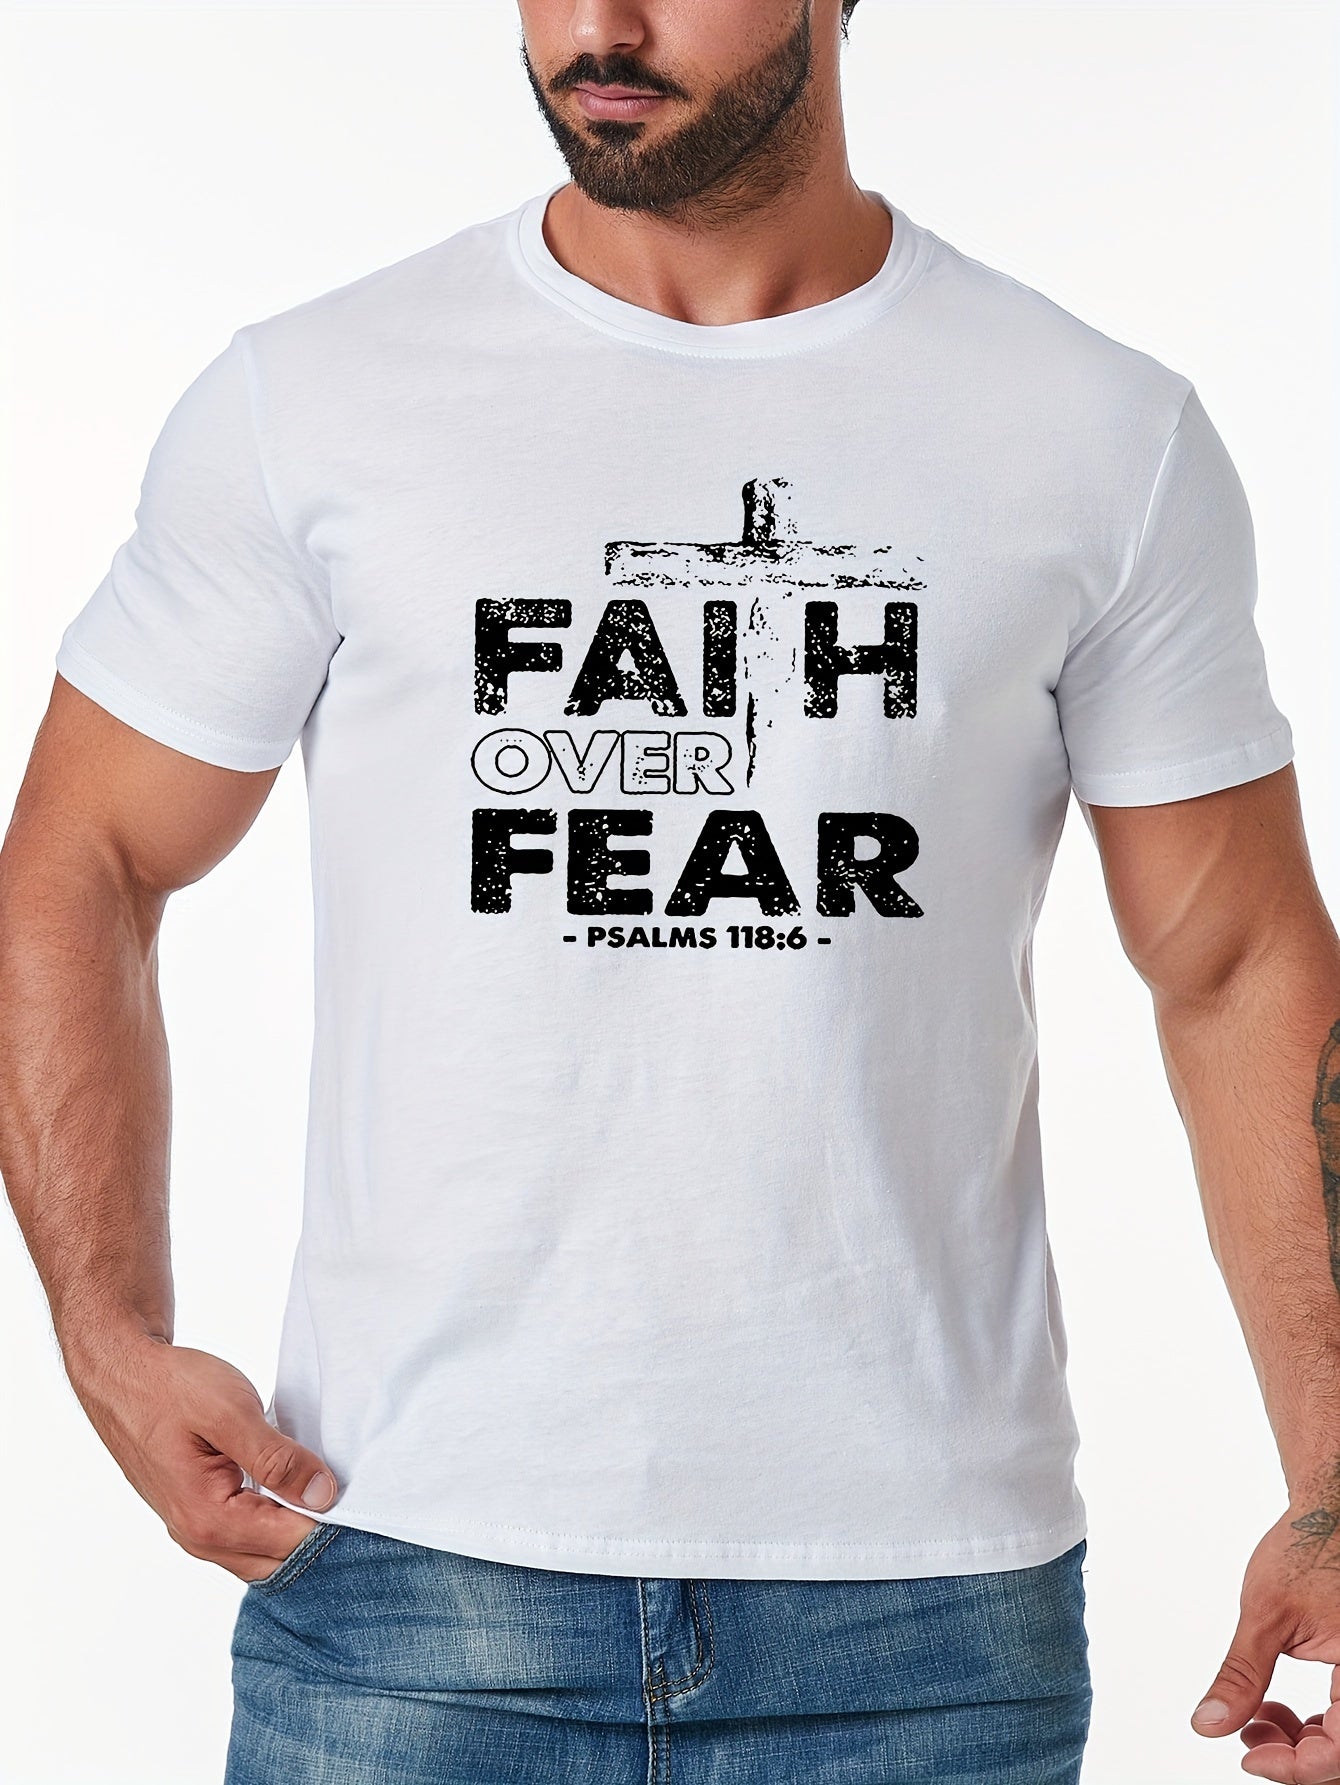 Faith Over Fear Men's Christian T-shirt claimedbygoddesigns